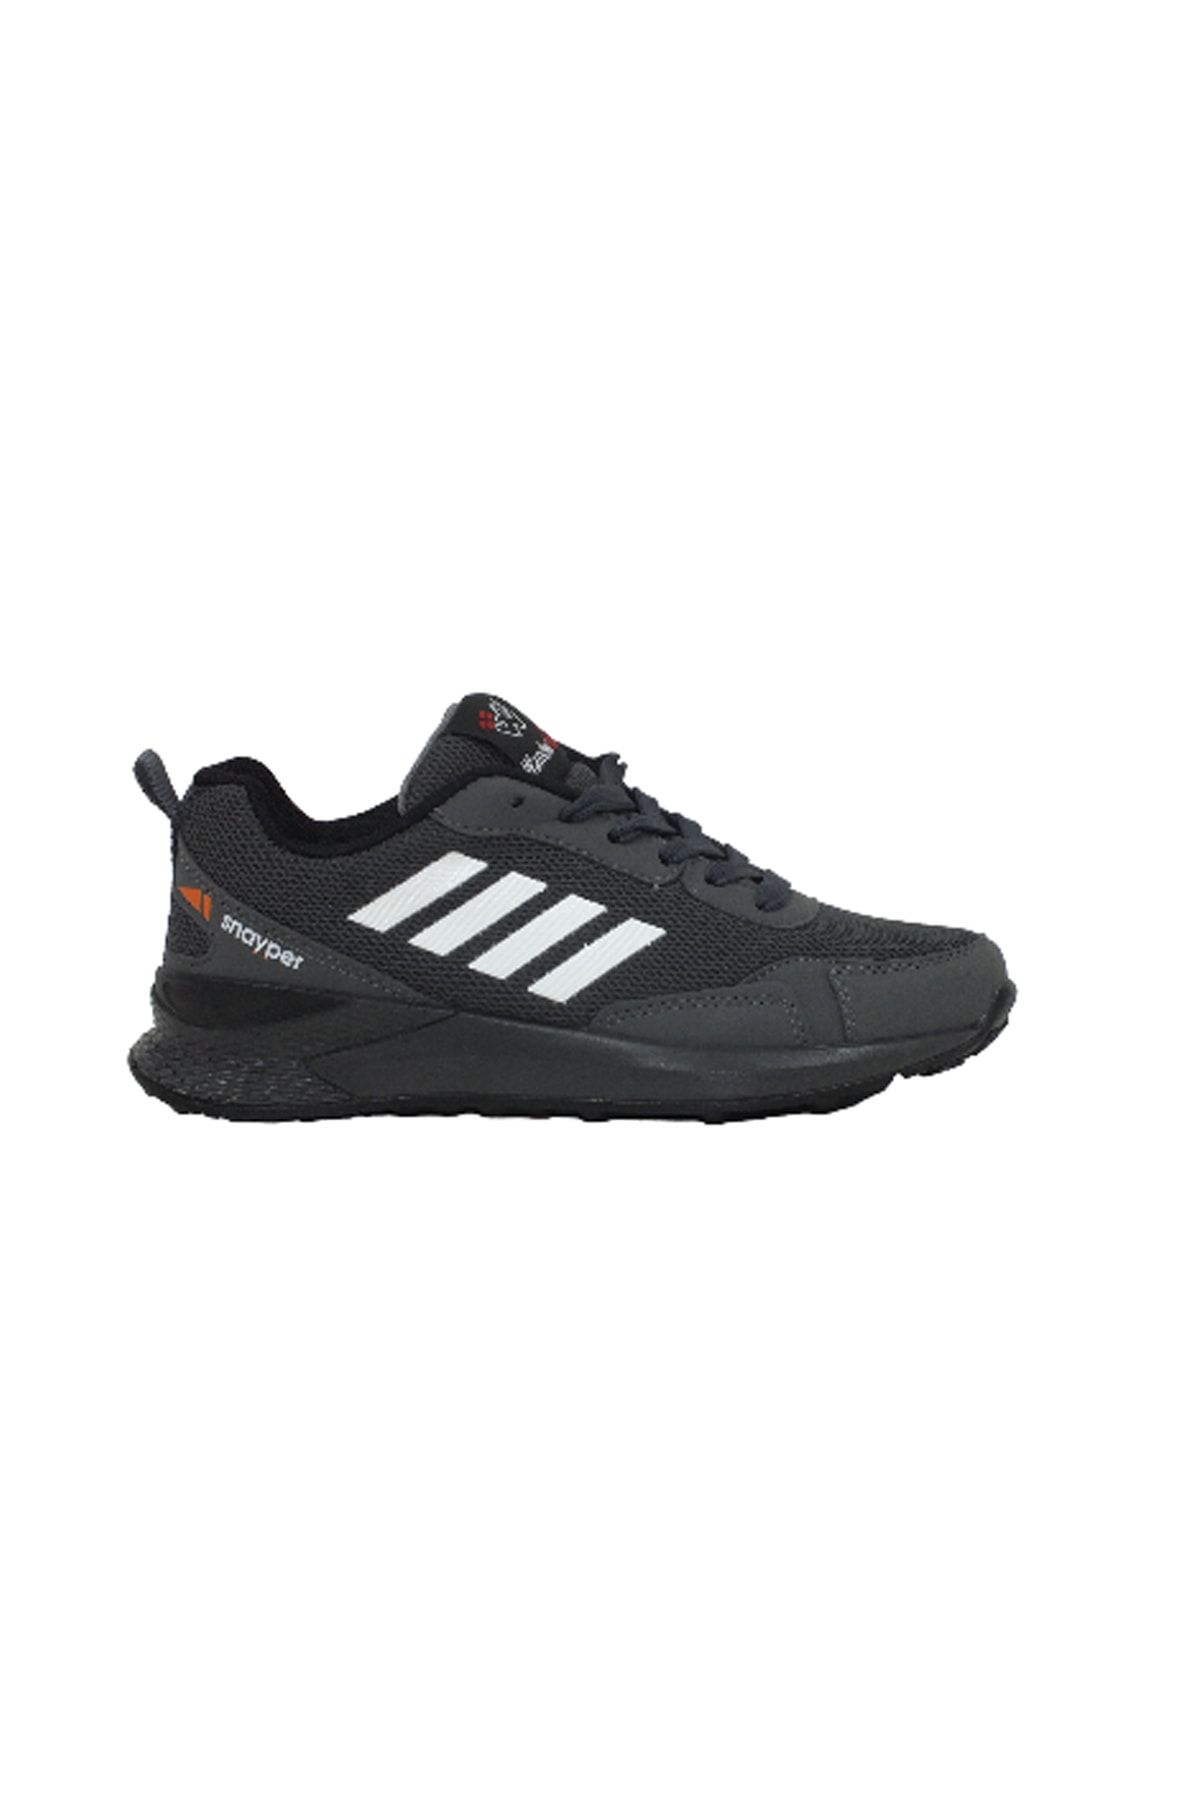 Afilli Füme Siyah Beyaz Erkek Kalın Günlük Büyük Ayak 46 47 48 Spor Sneaker Yürüyüş Antrenm Ayakkabı